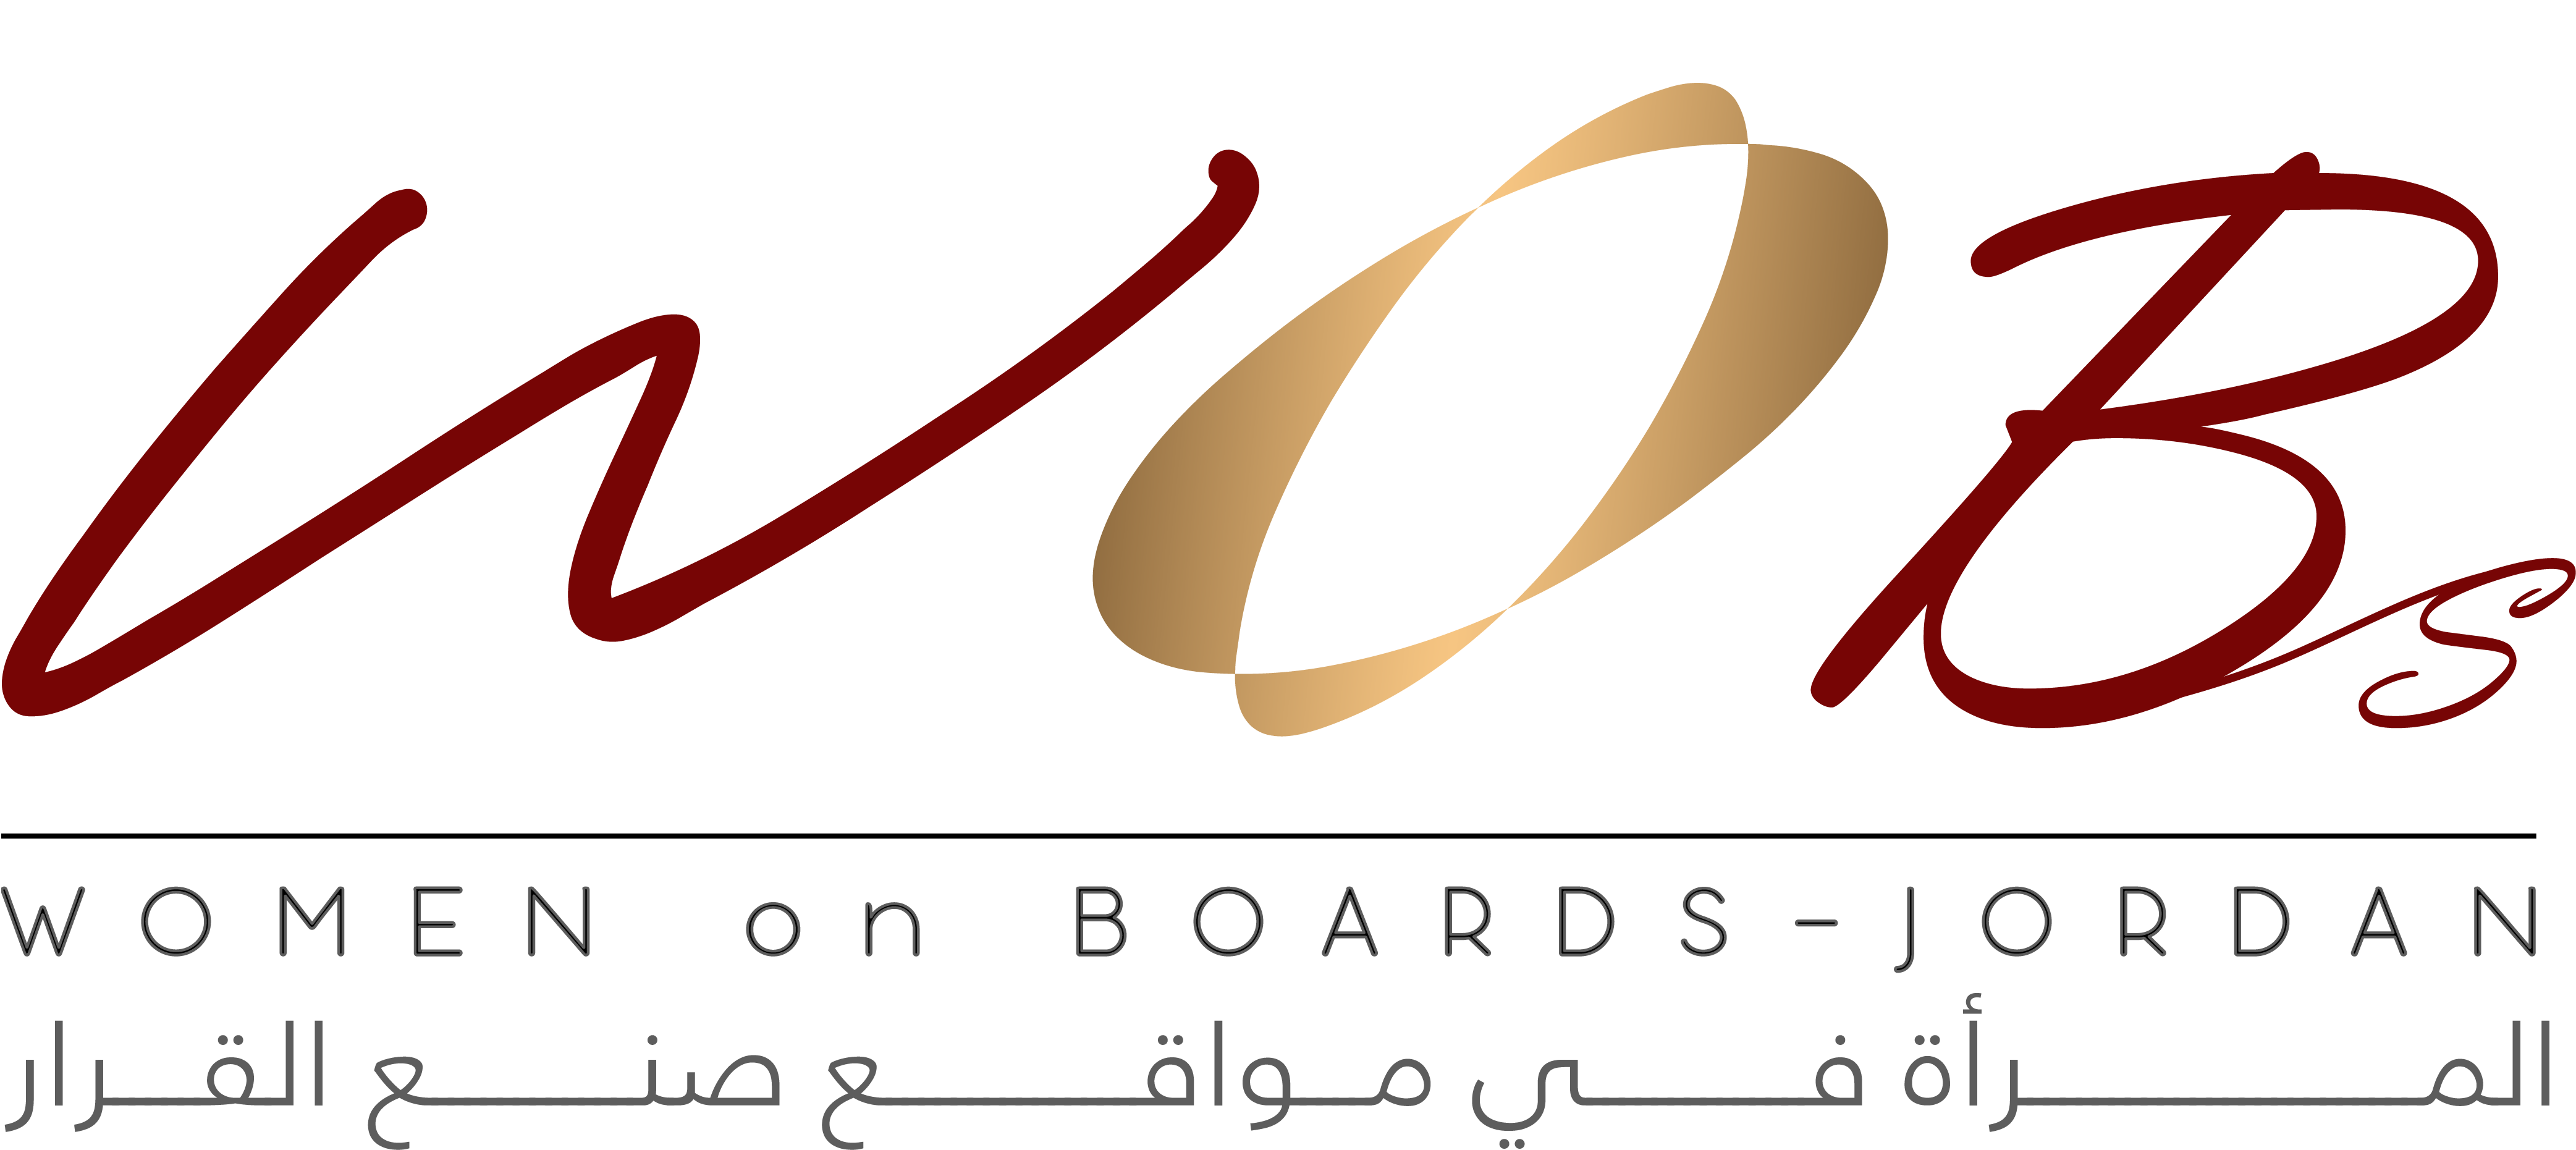 Association of Women on Board